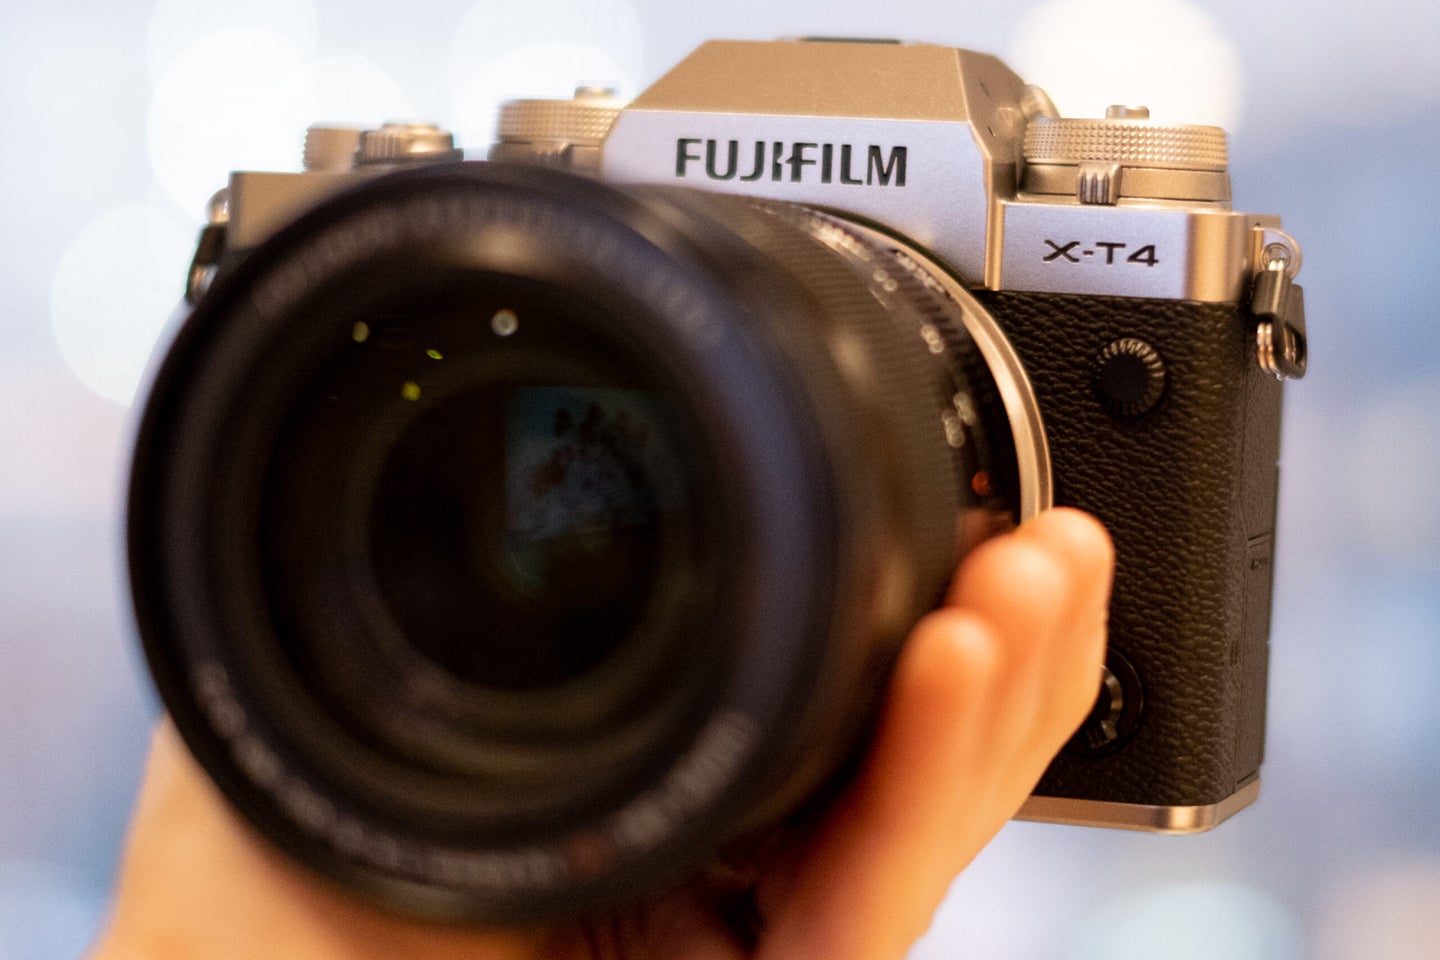 Fujifilm X-T4 the best travel camera.